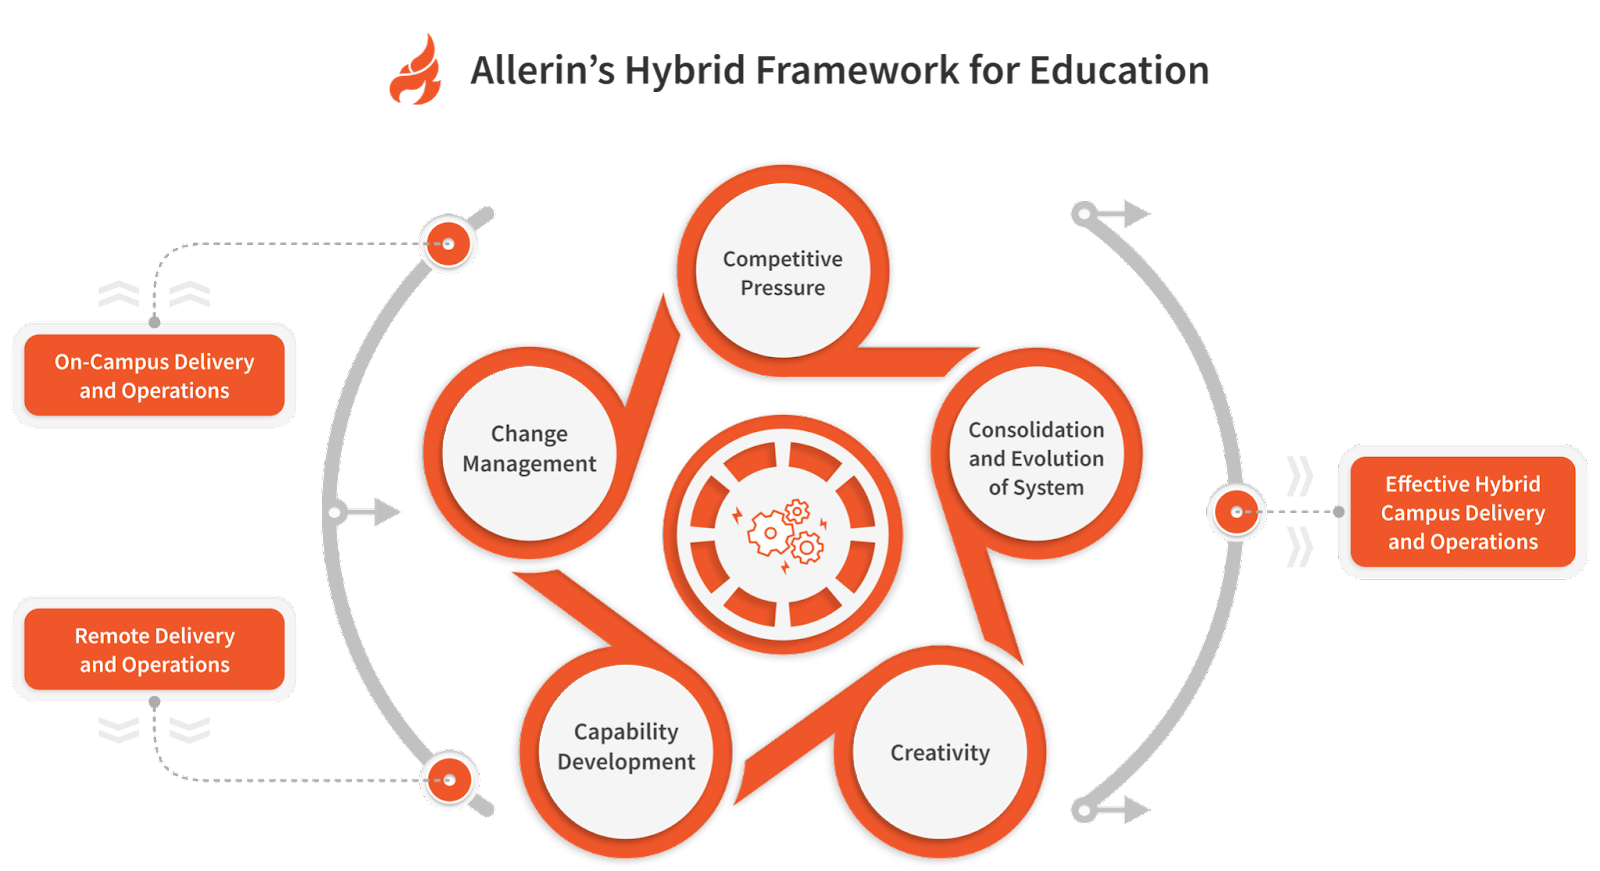 Allerin's Hybrid Framework for Education